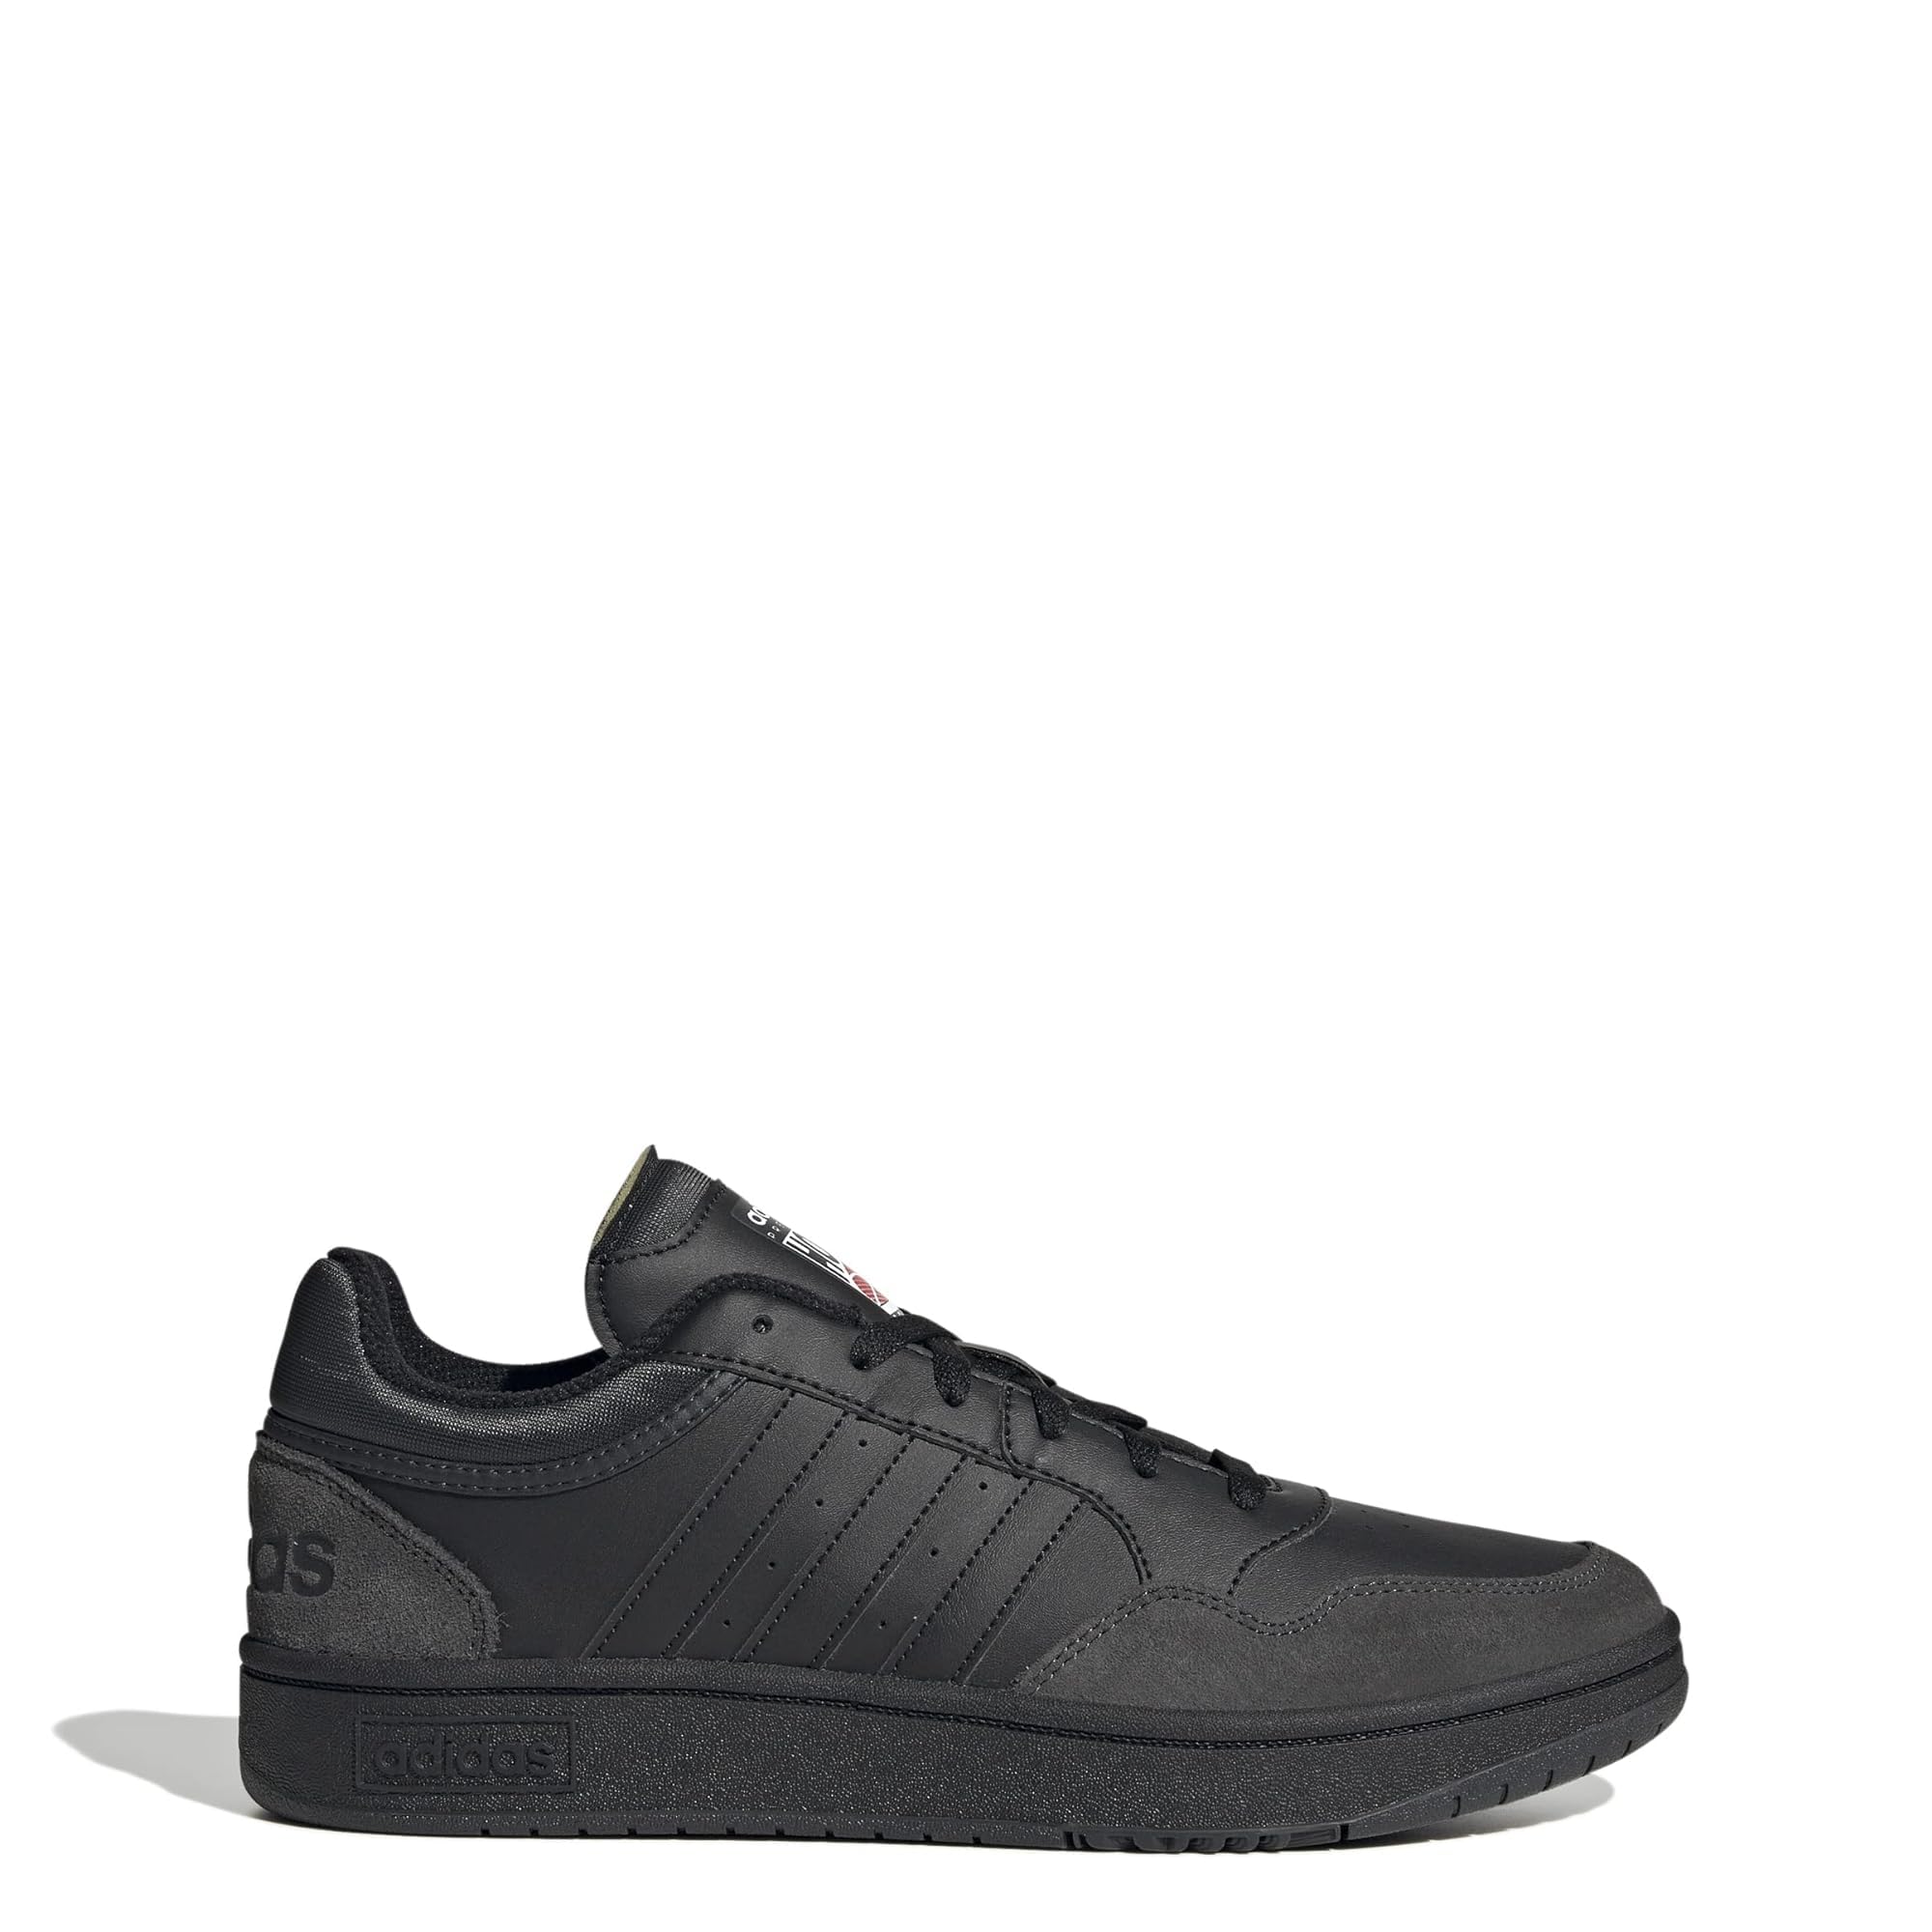 adidas mens Hoops 3.0 Low Sneaker, Black/Black/Carbon, 9 US